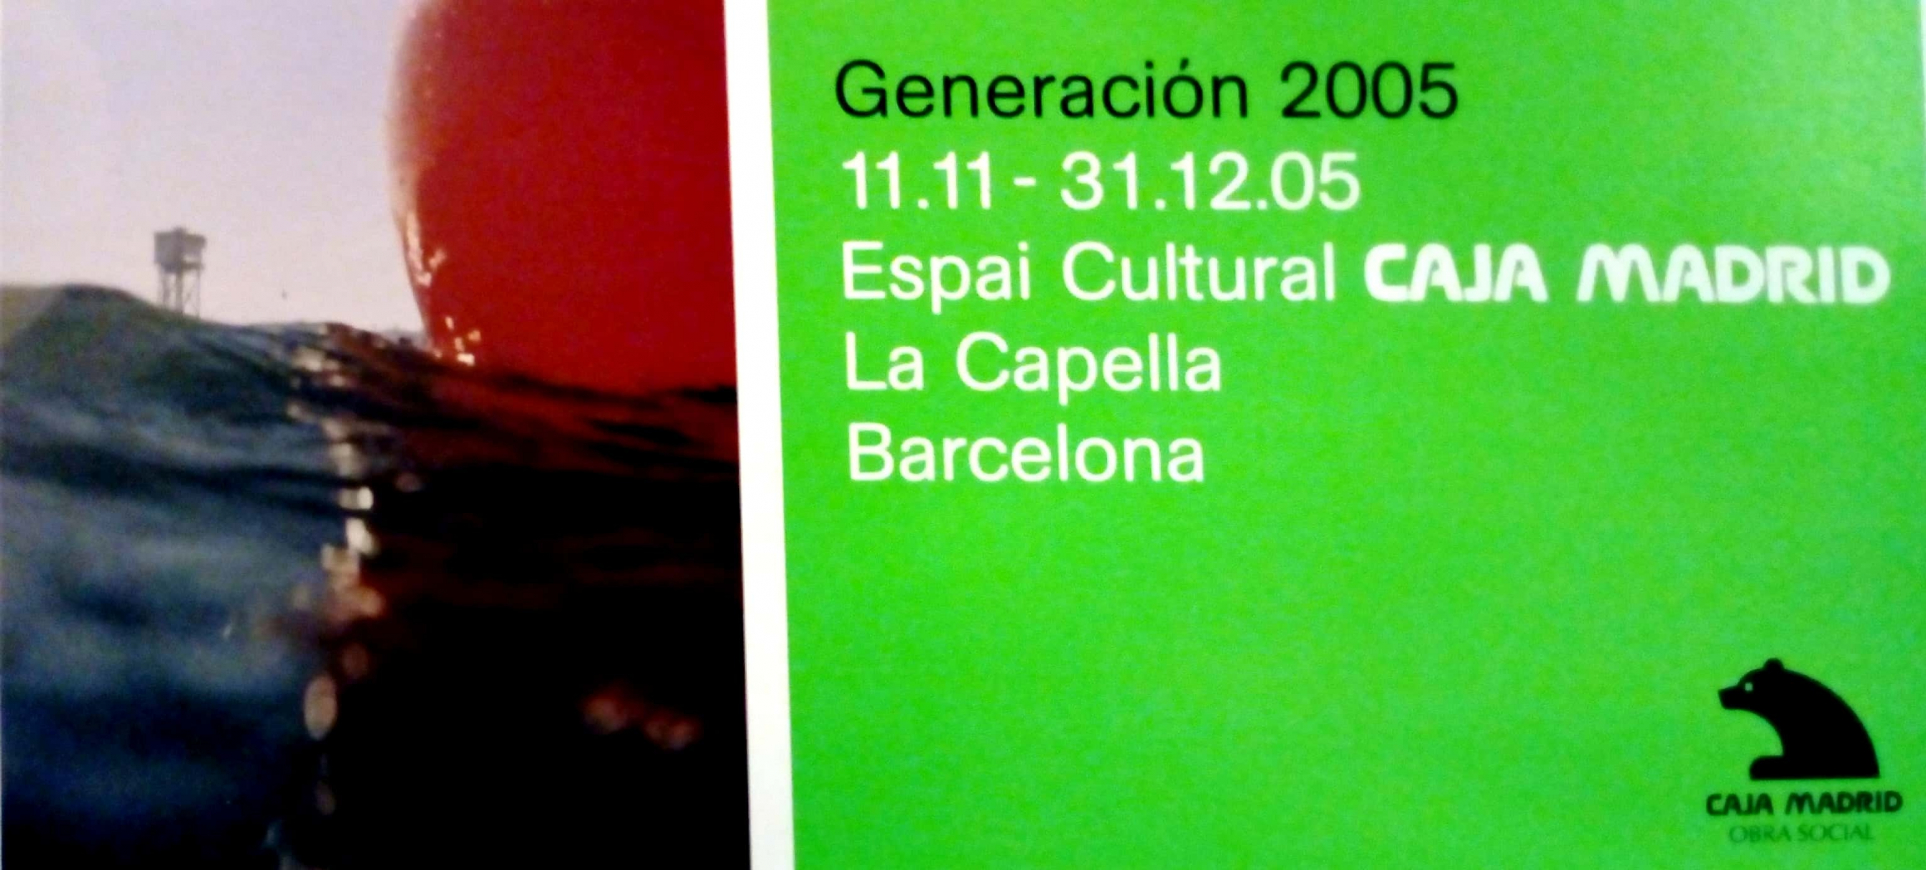 Generació 2005. Premis i beques d'art Caja Madrid